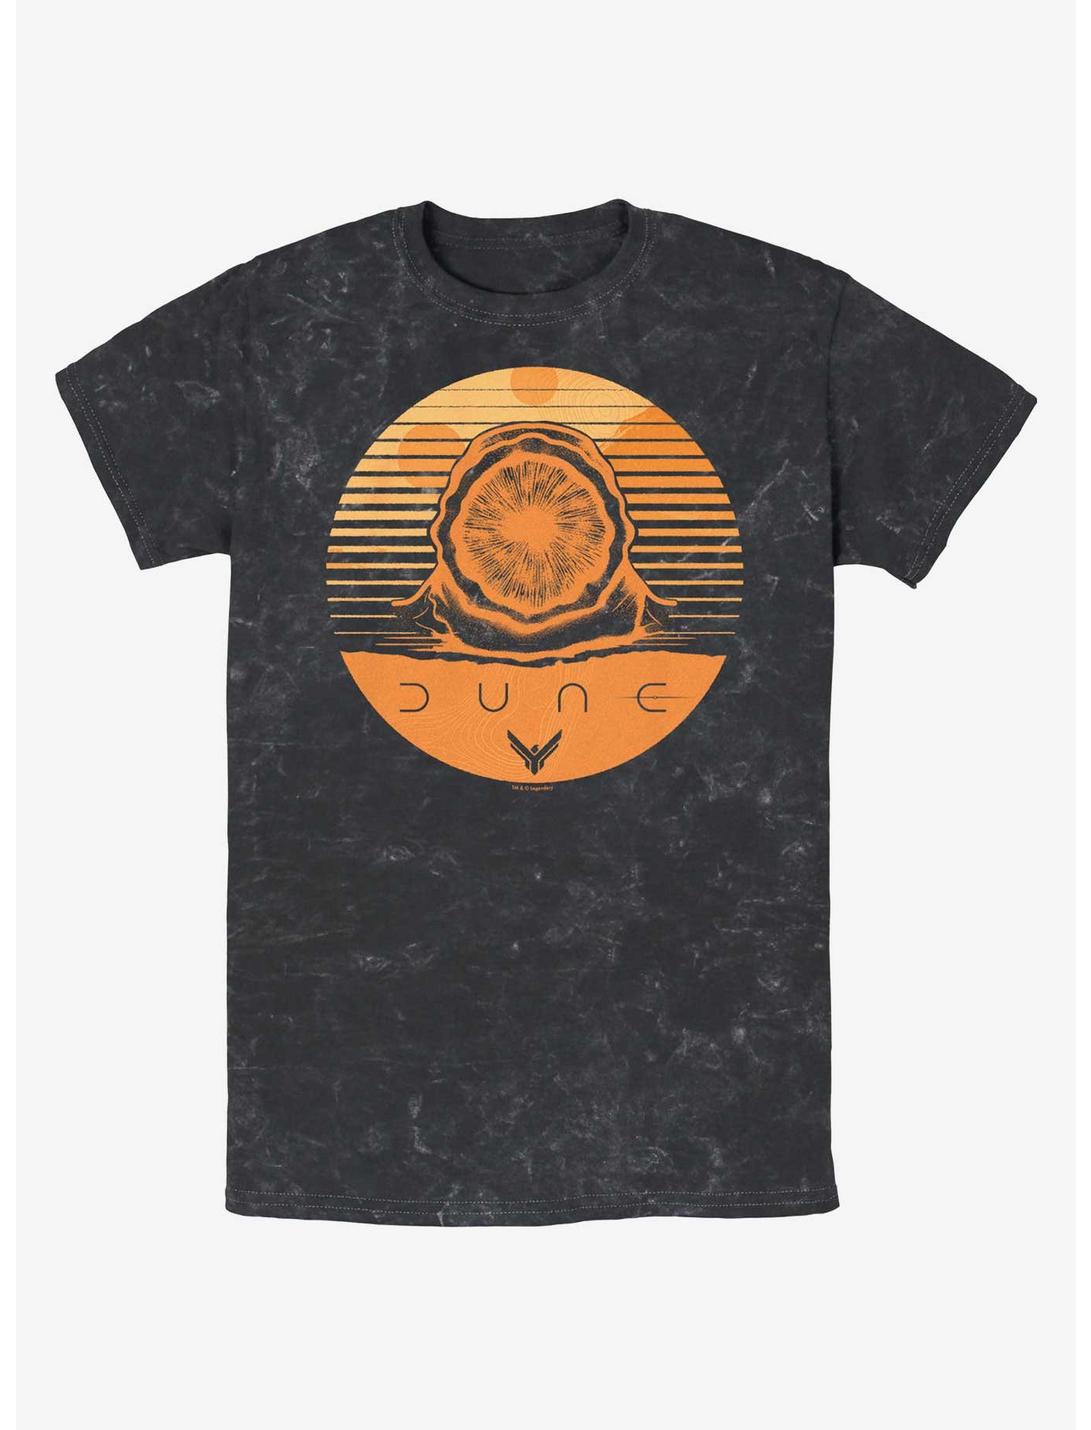 Dune Arrakis Sandworm Stamp Mineral Wash T-Shirt, BLACK, hi-res